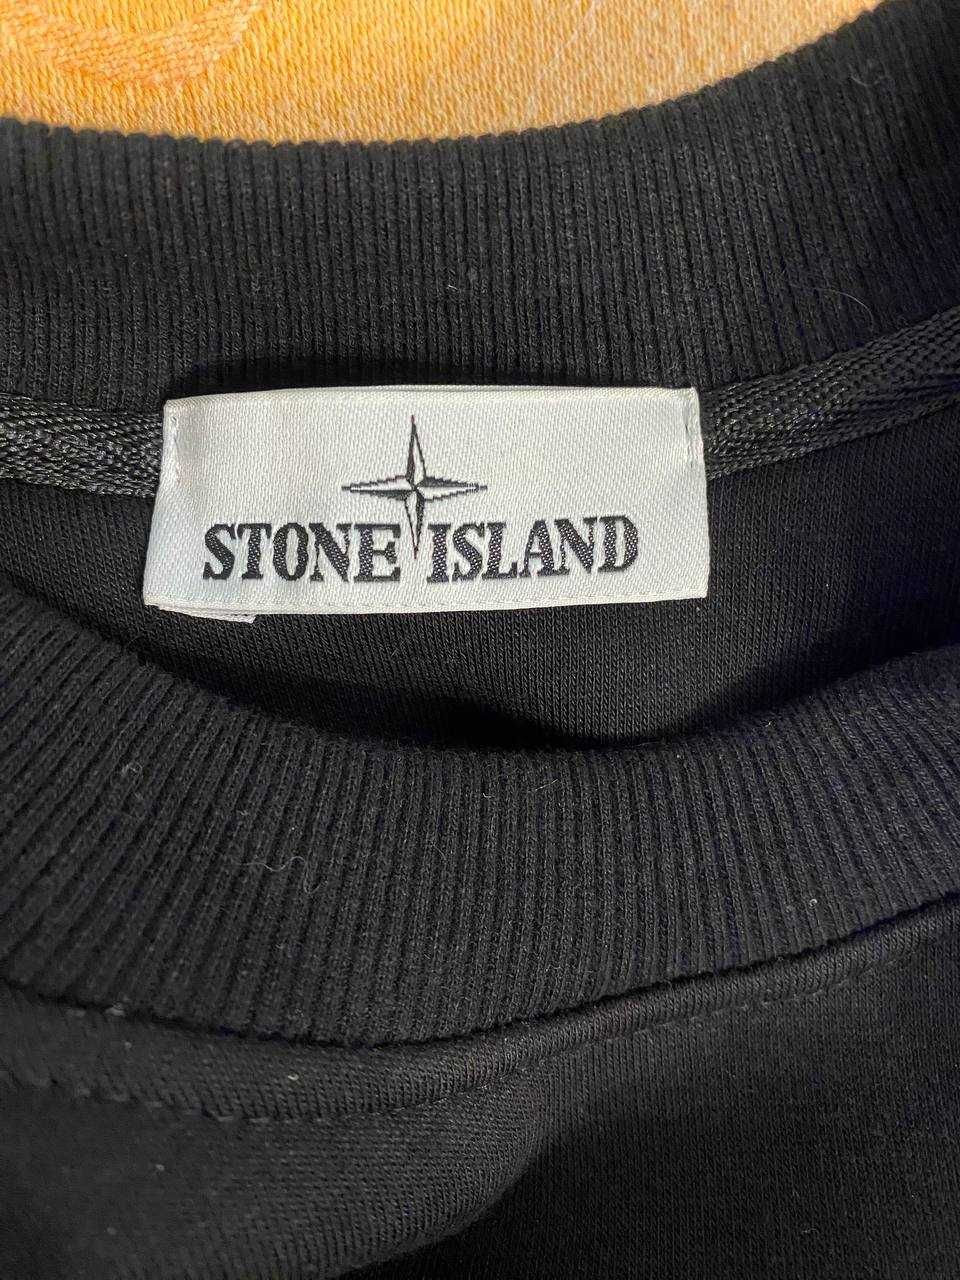 Світшот Stone Island/Стон Айленд БЕЗКОШТОВНА ДОСТАВКА